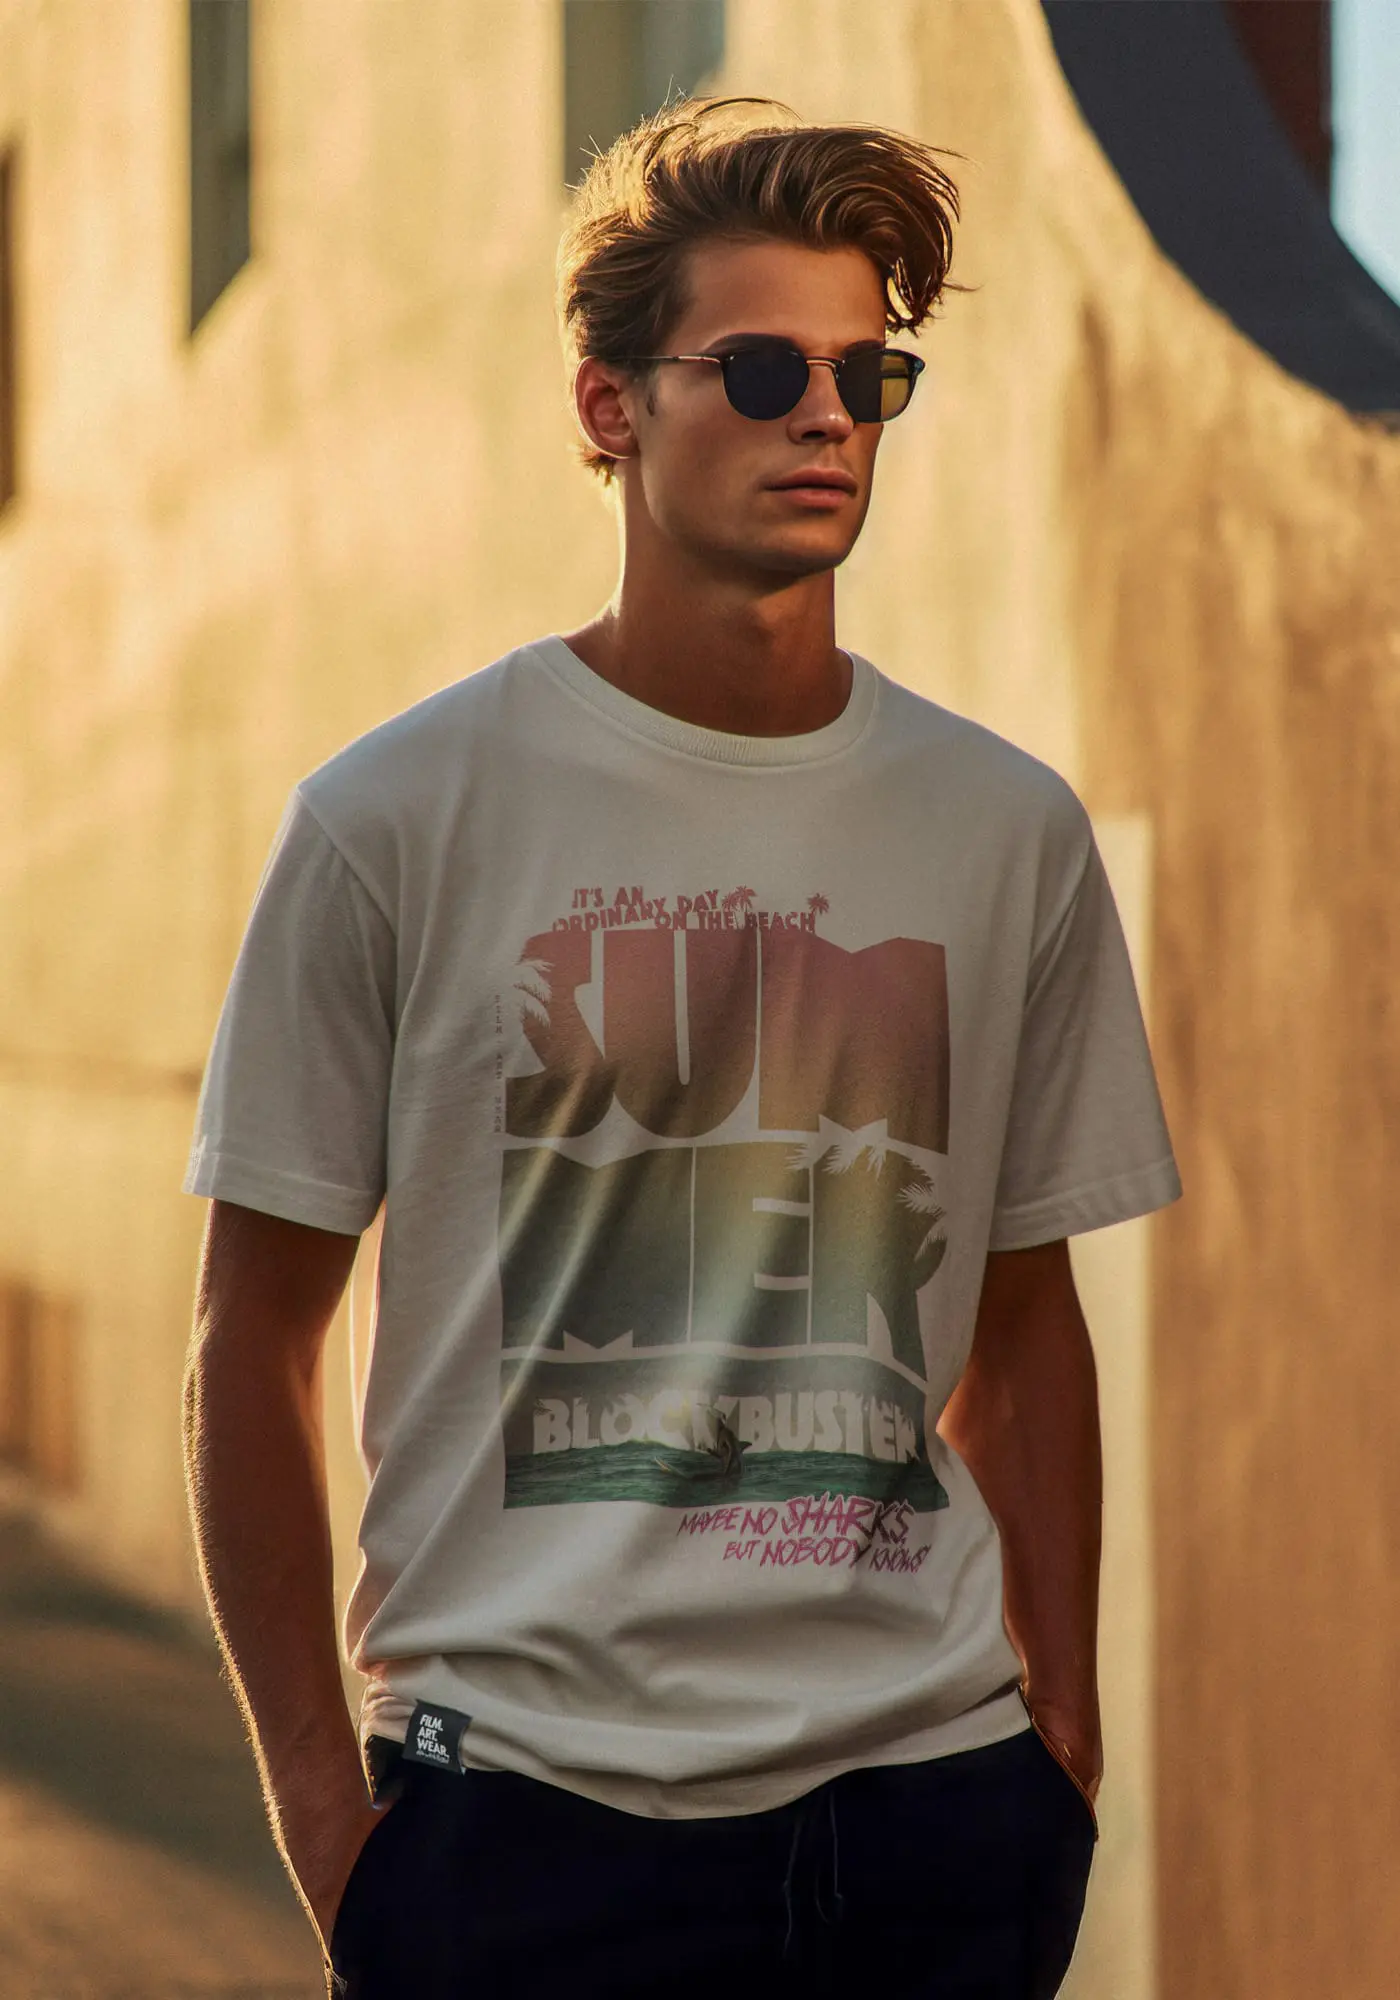 Jordan trägt das t-shirt mit prints Summerblockbuster film fanshirts T-Shirt in natural raw Farbe